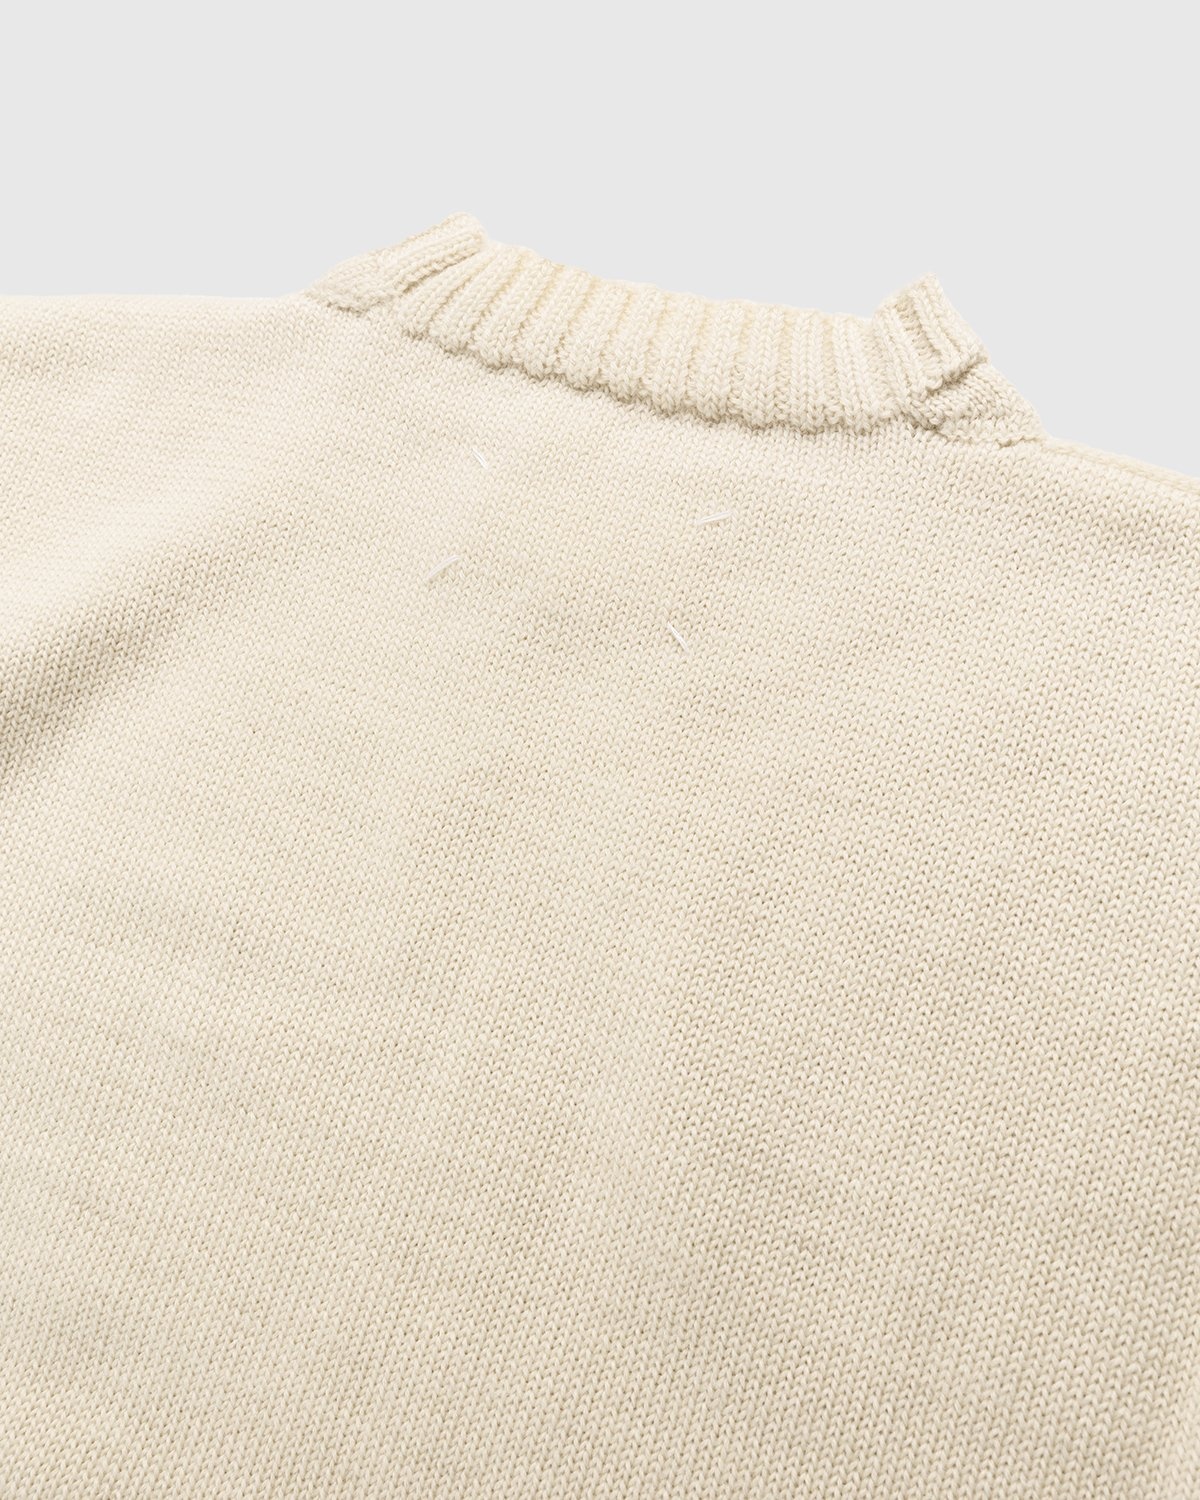 Maison Margiela – Pullover Ecru - Knitwear - Beige - Image 5